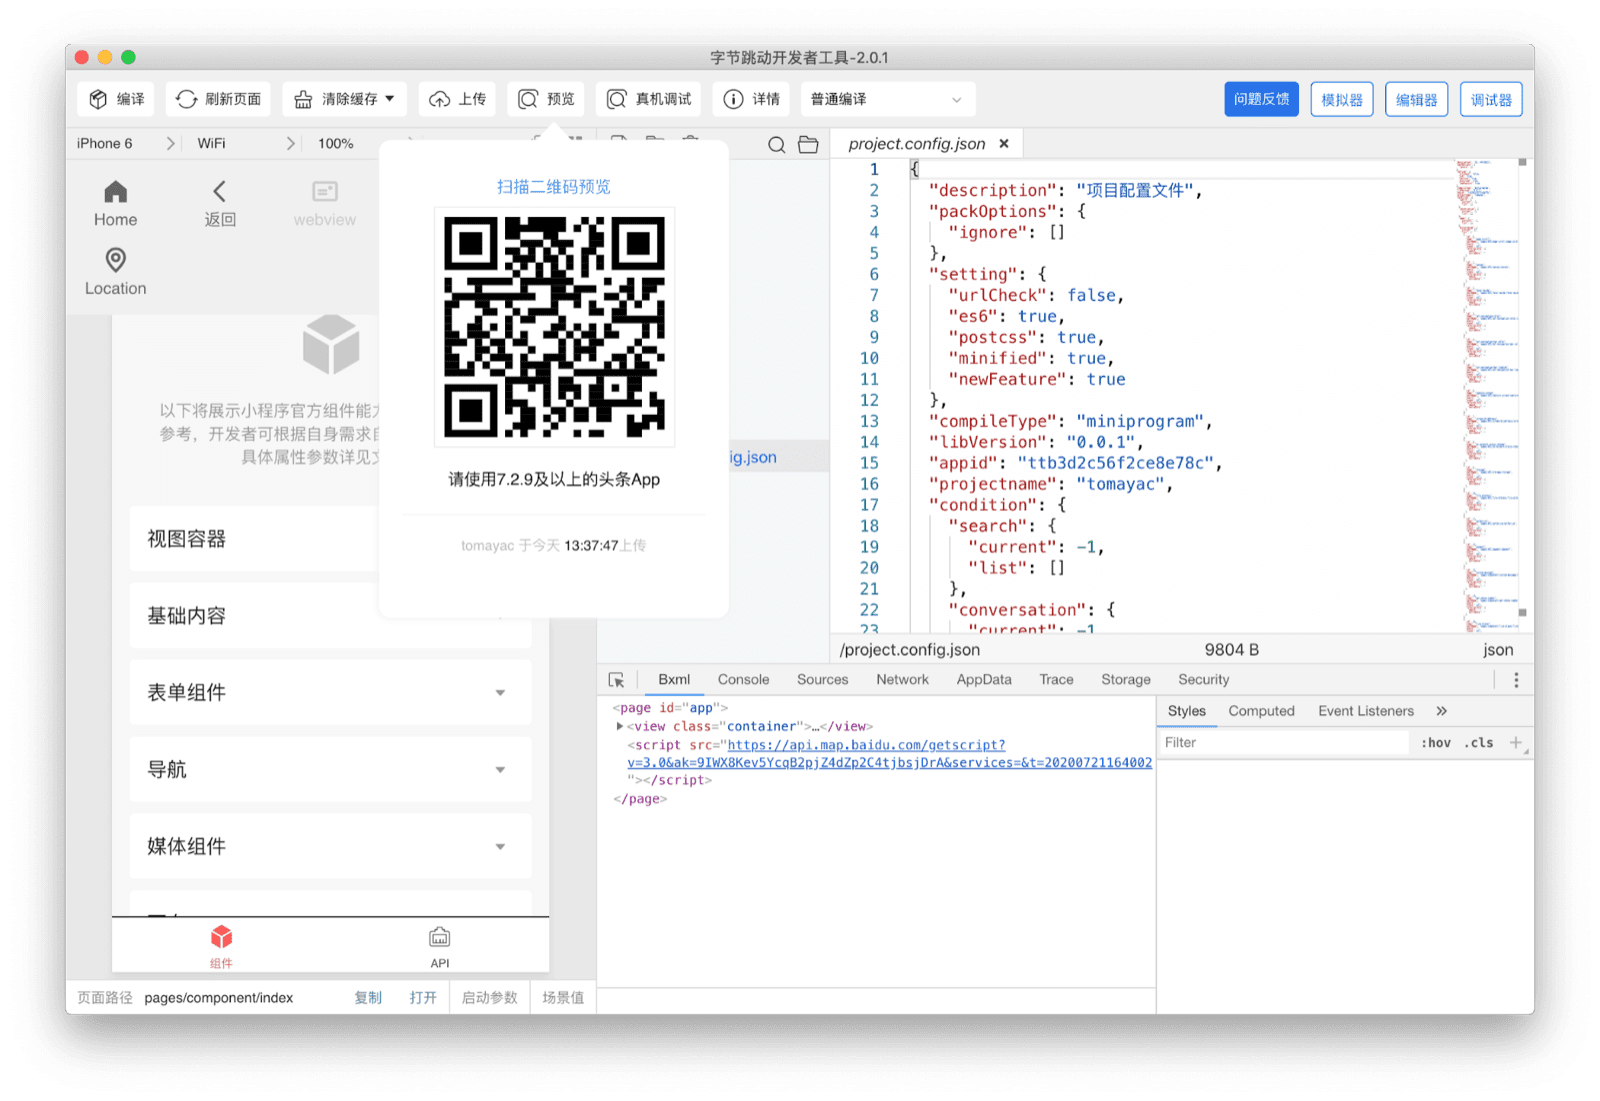 ByteDance DevTools mit einem QR-Code, den der Nutzer mit der Douyin App scannen kann, um die aktuelle Mini-App auf seinem Gerät zu sehen